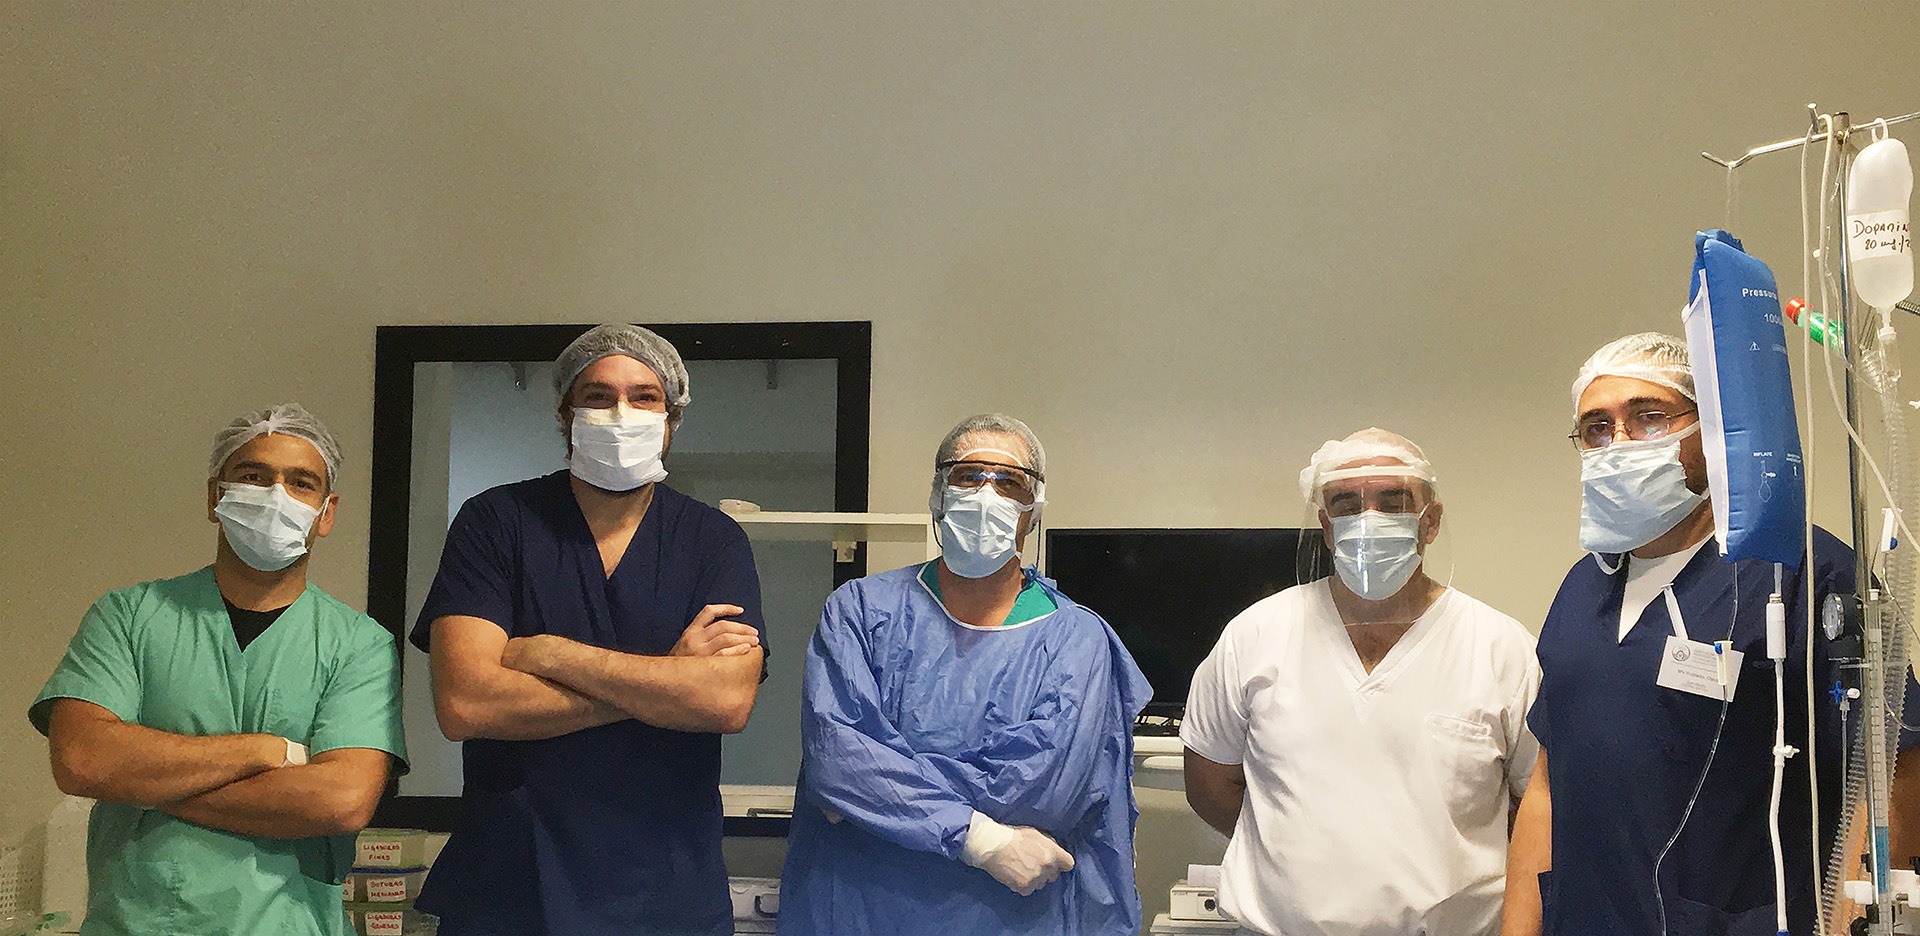 El equipo médico que puso a prueba el sistema de adaptadores conformado por los médicos Ignacio Lugones, Roberto Orofino, Martin Marcos, Oscar Robledo y Javier Mouly.